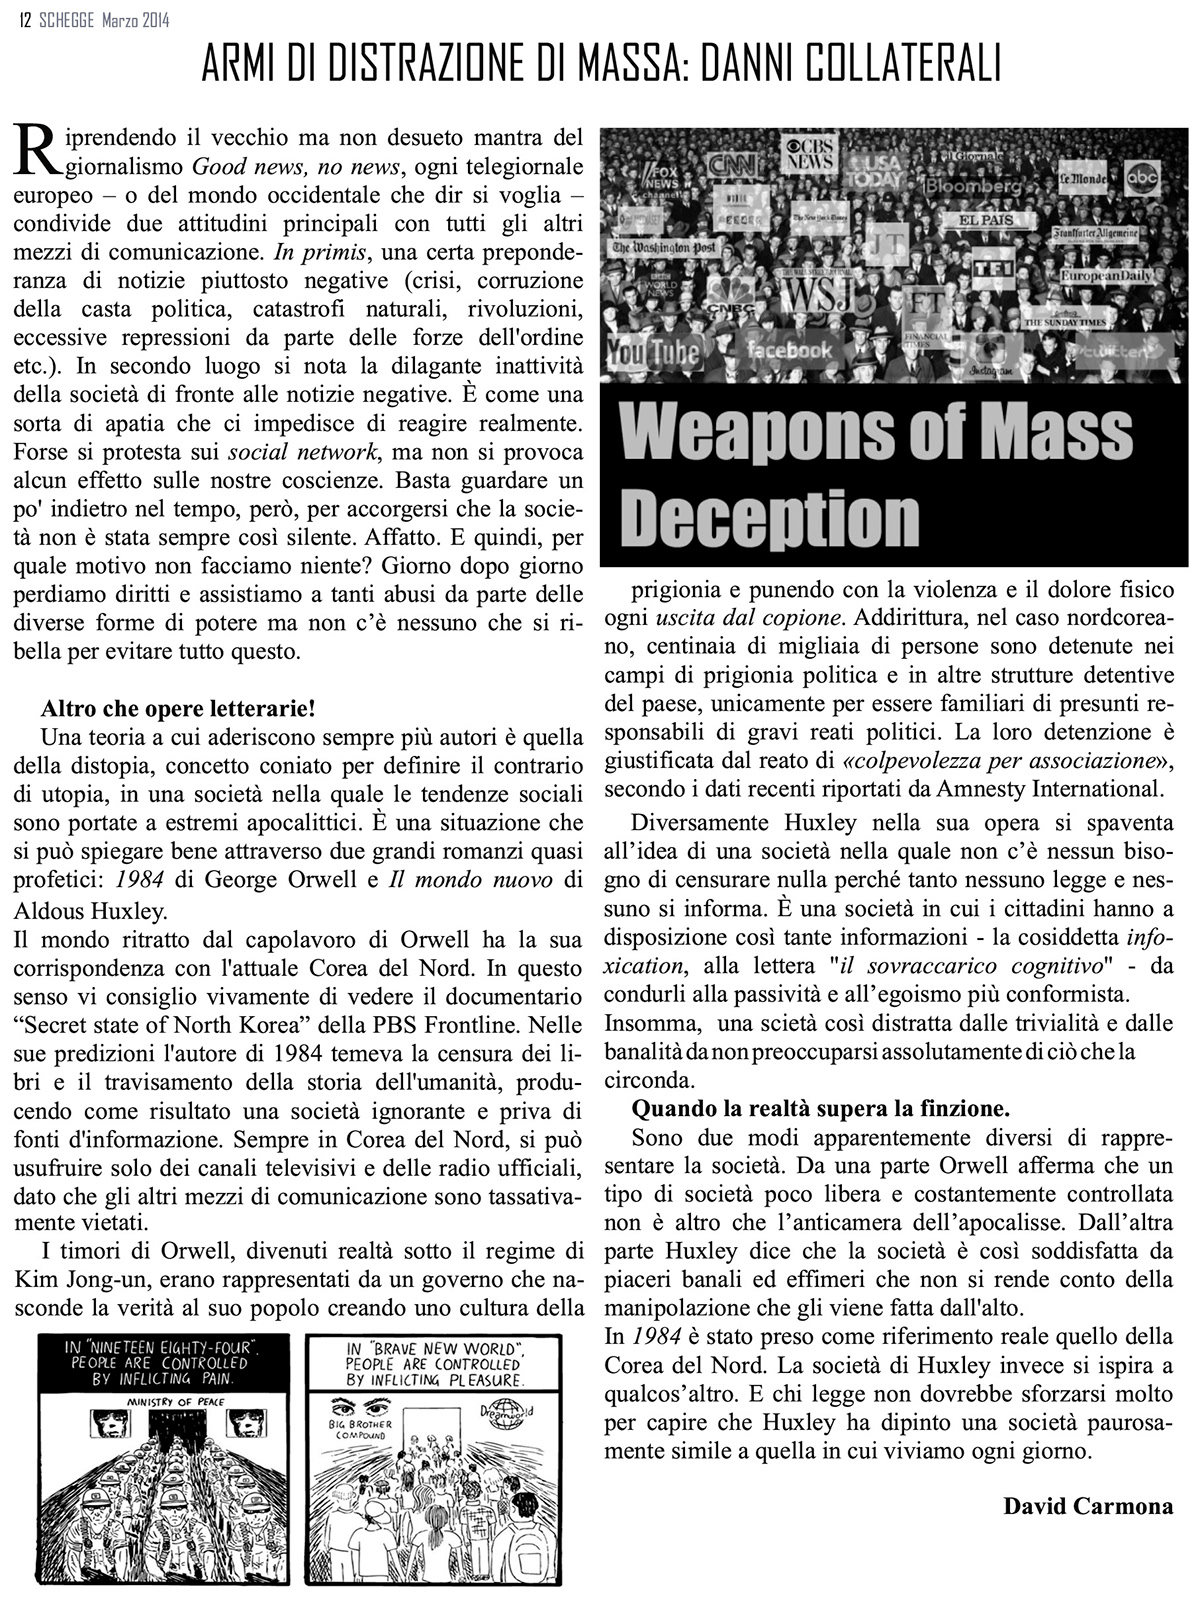 schegge Italian articles reports